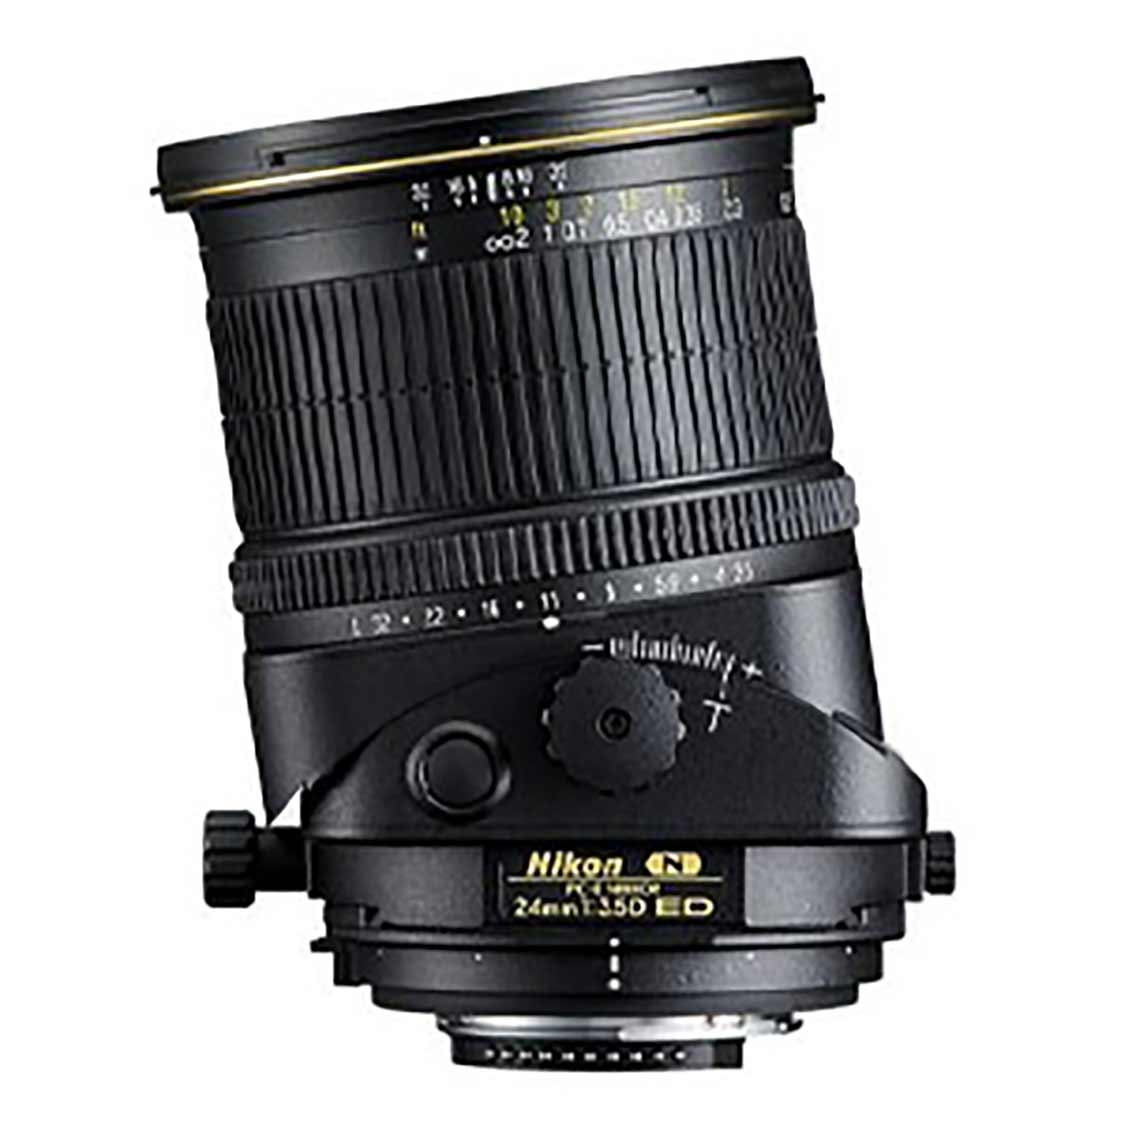 Nikon 24mm F3.5 PC-E Lens